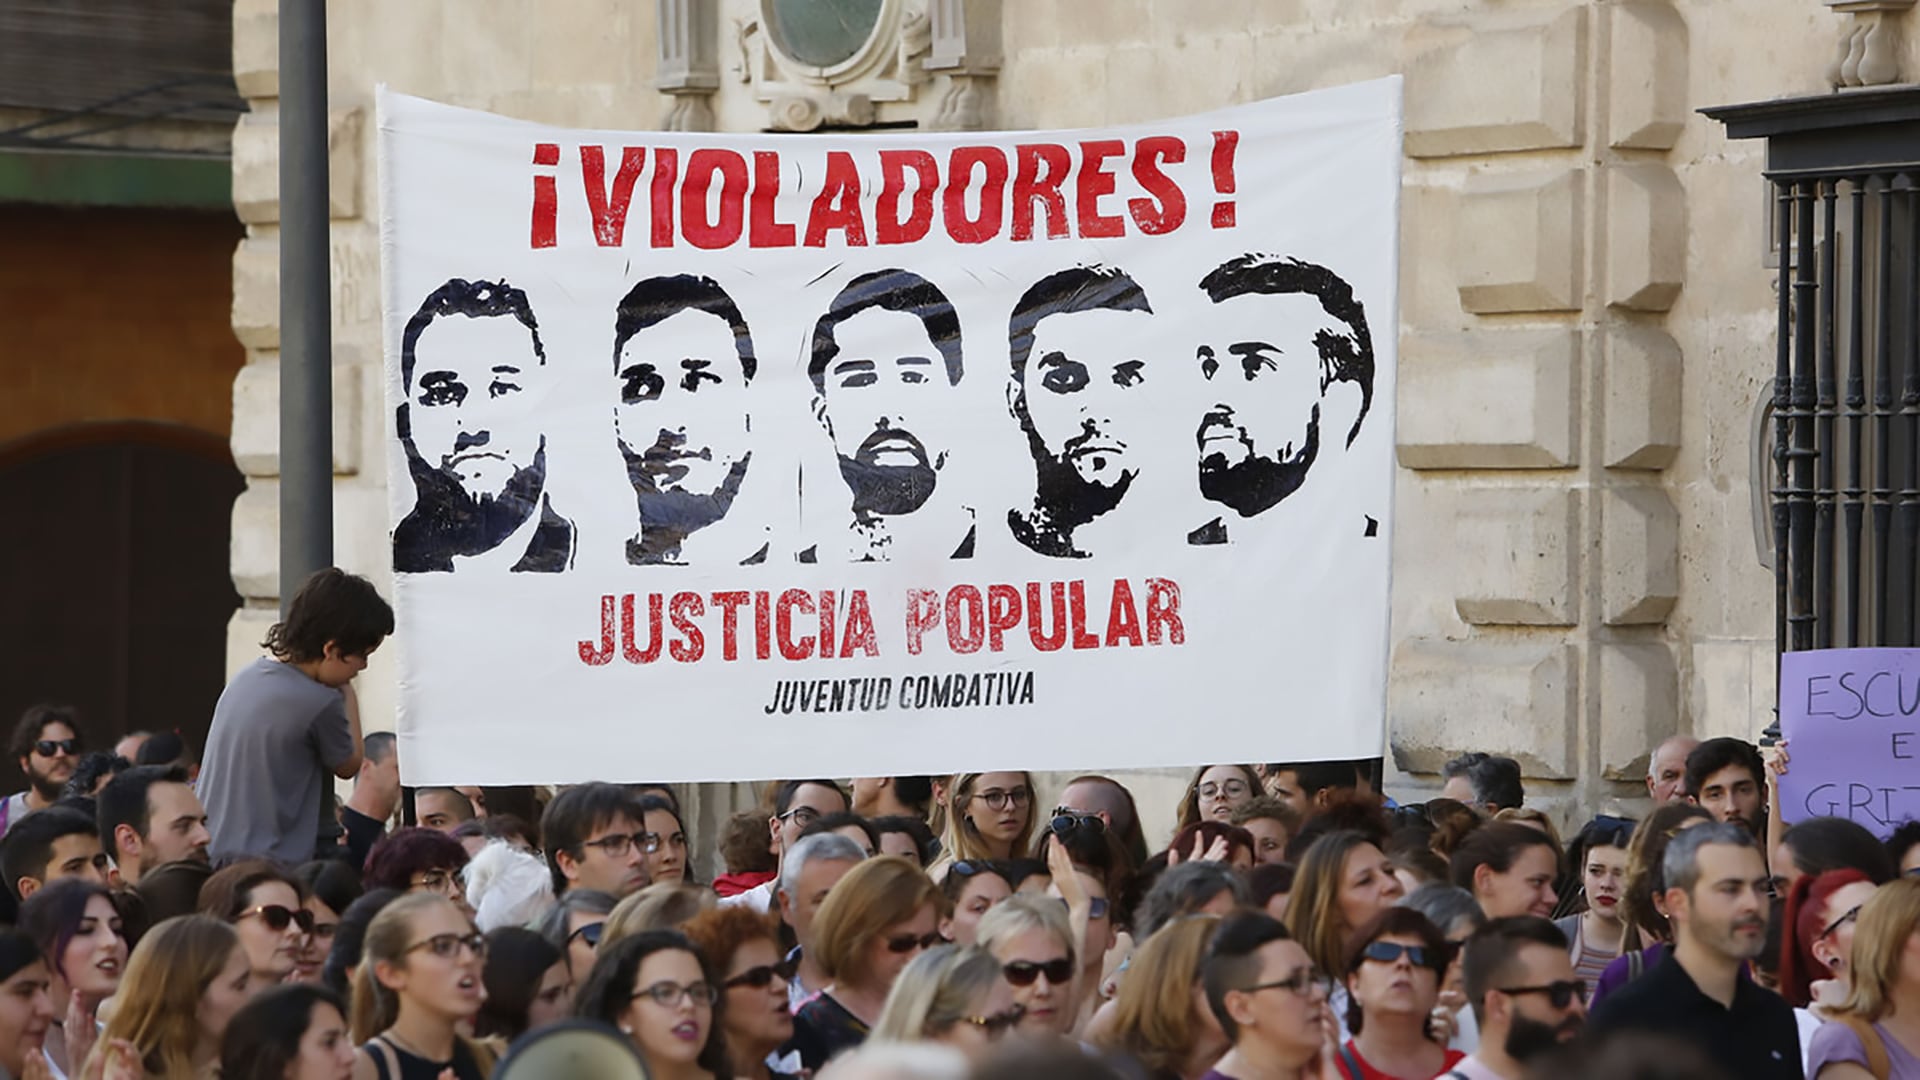 Protestas por la calificación liviana dada en primera instania por los jueces a los integrantes de la Manada de Pamplona
 